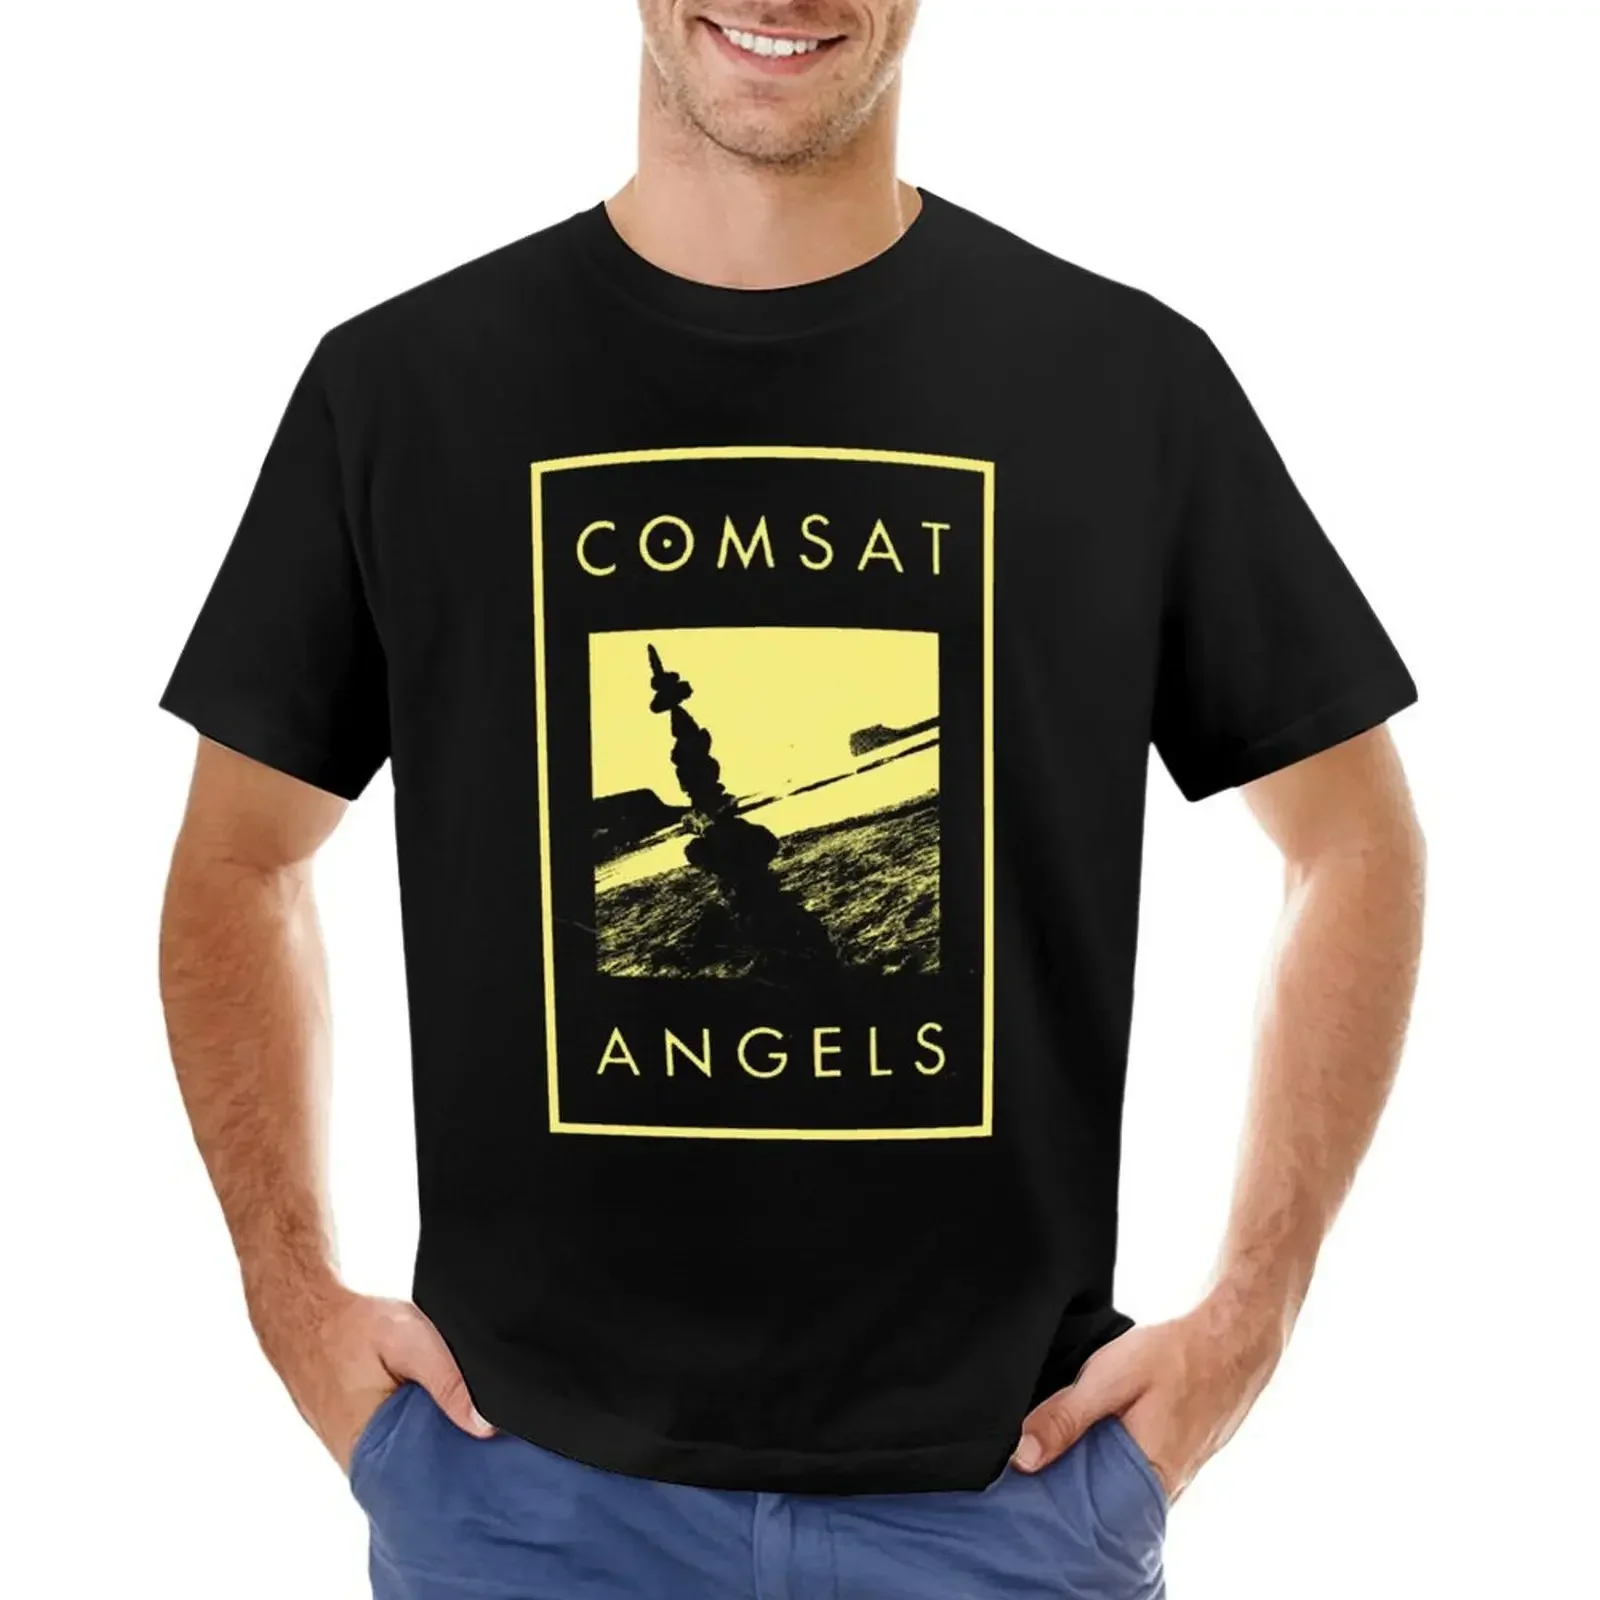 

Comsat Angels T-shirt hippie clothes Blouse Men's t shirts